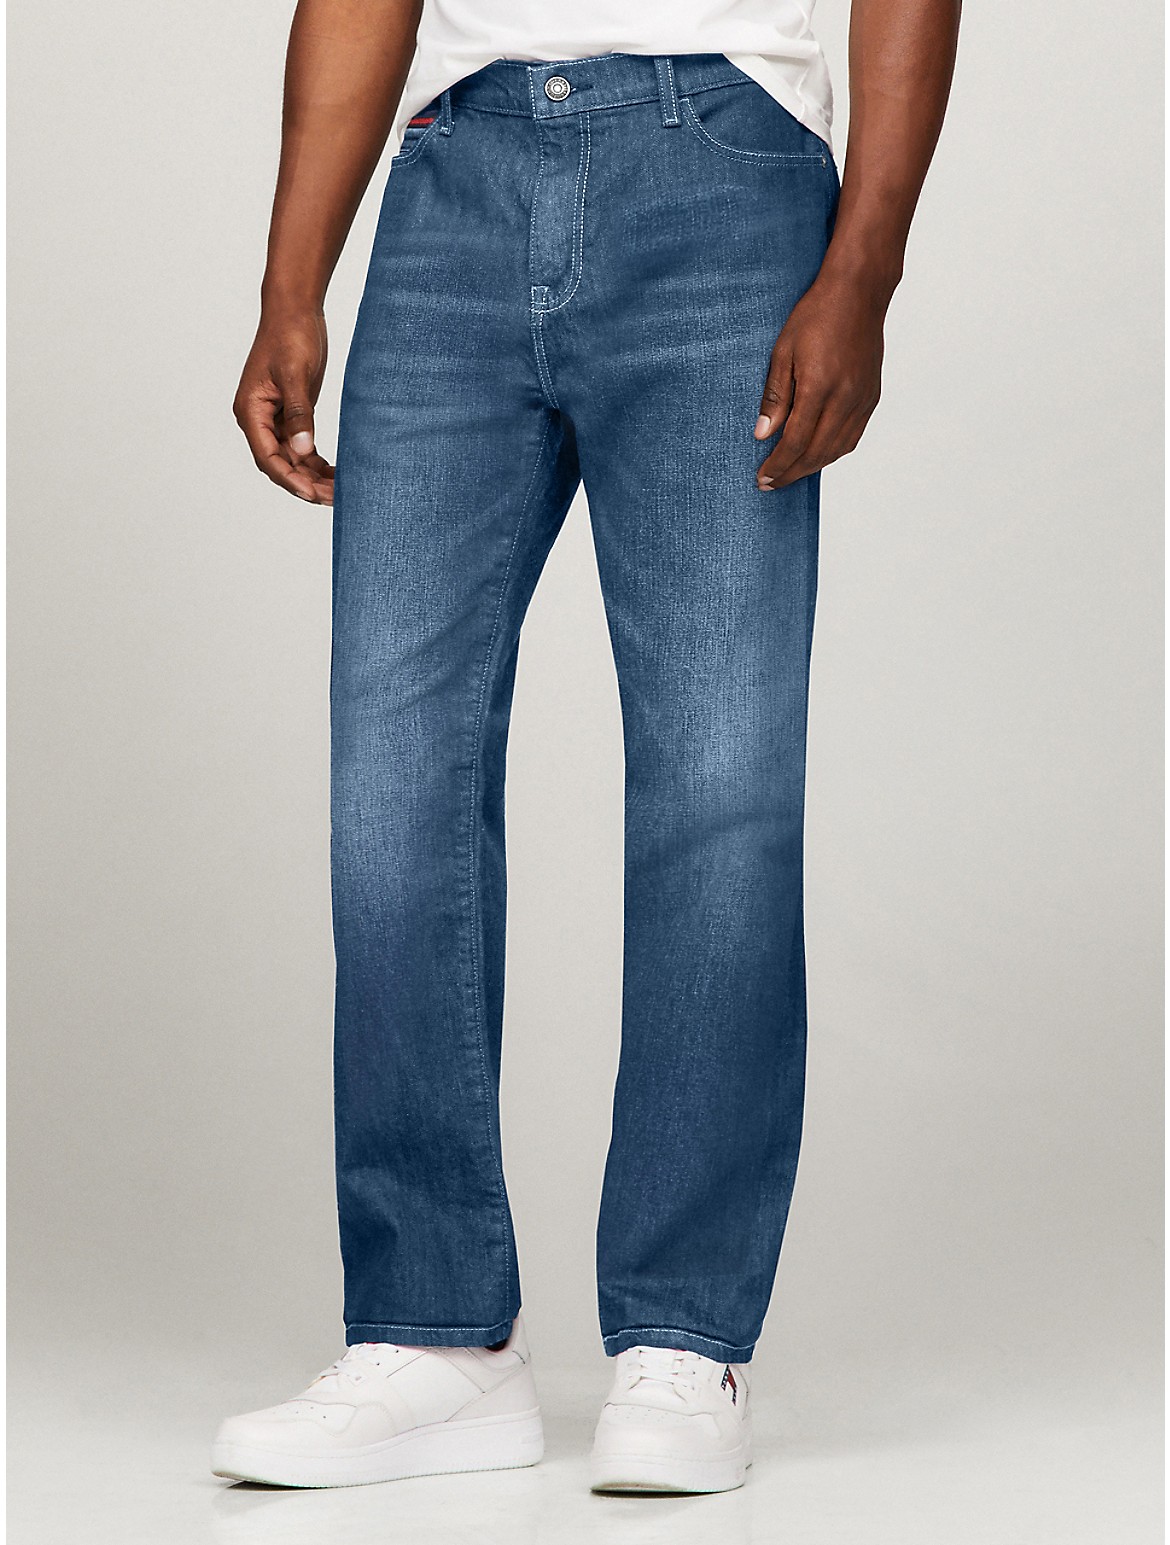 Tommy Hilfiger Men's Essential Straight Fit Dark Wash Jean